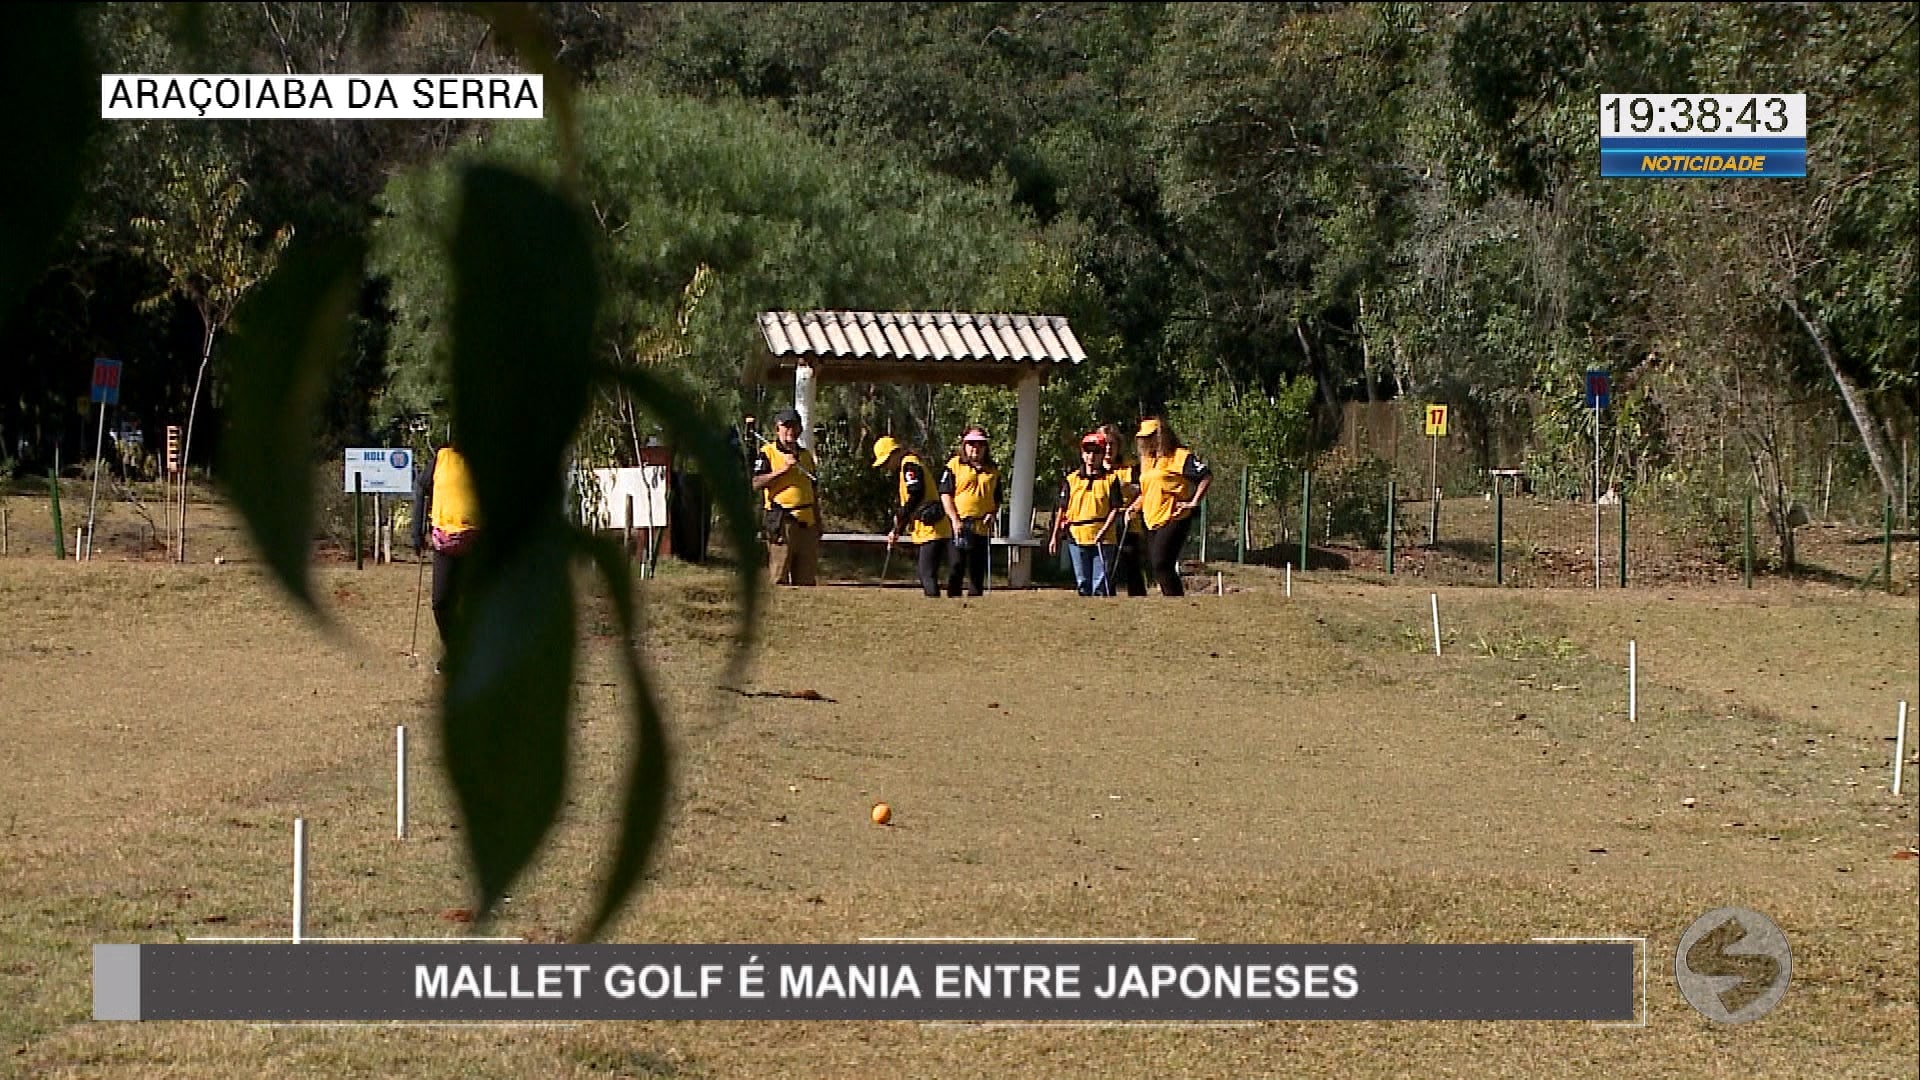 Mallet Golf é mania entre descendentes de japoneses em Araçoiaba da Serra